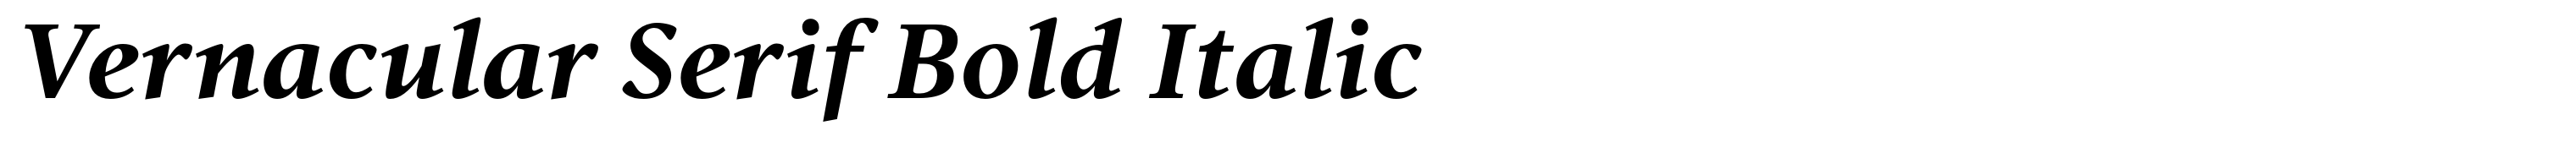 Vernacular Serif Bold Italic